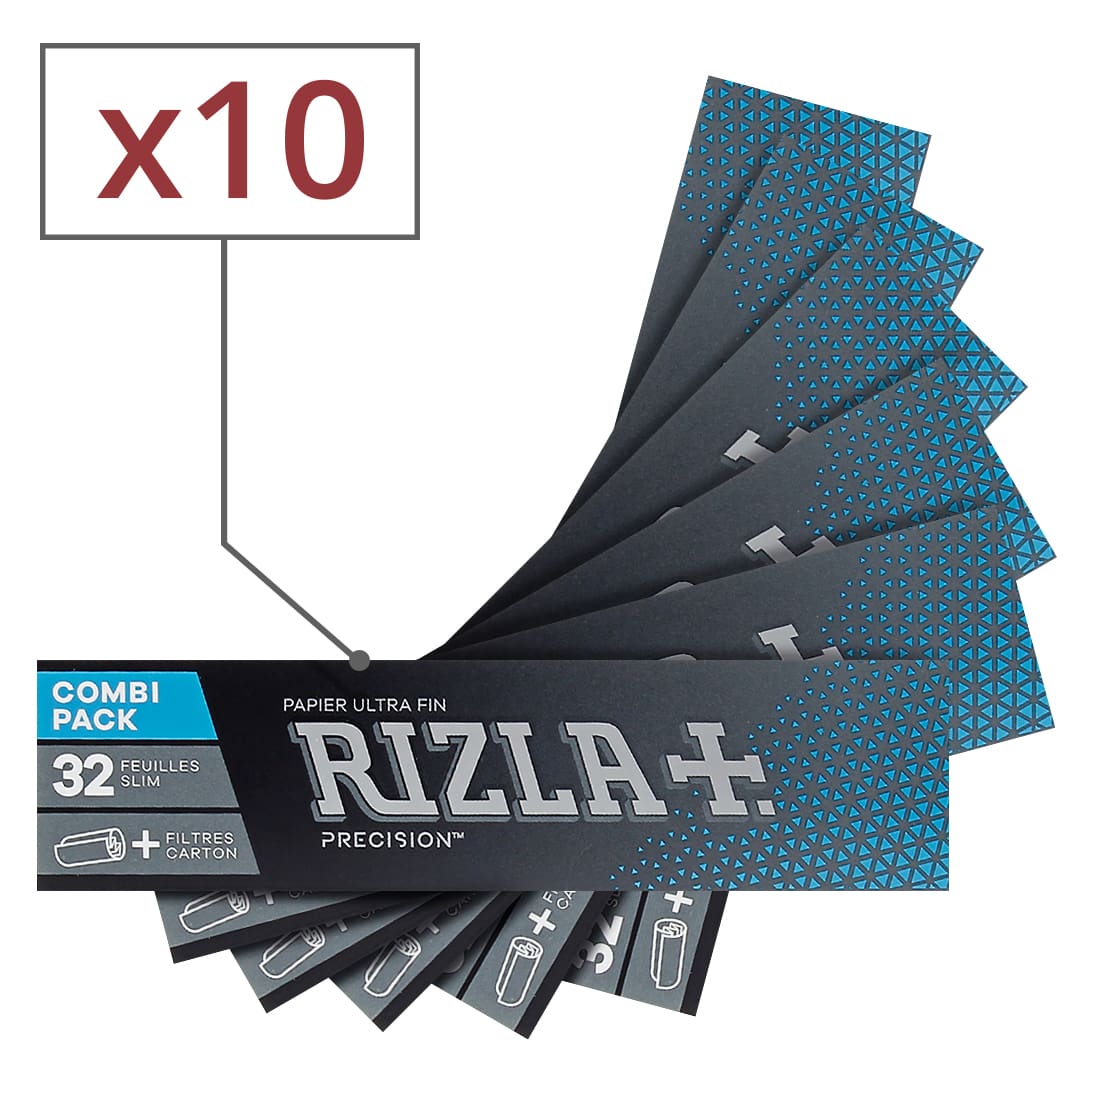 Papier à rouler Rizla + Precision Slim et Tips x 1 - 1,75€